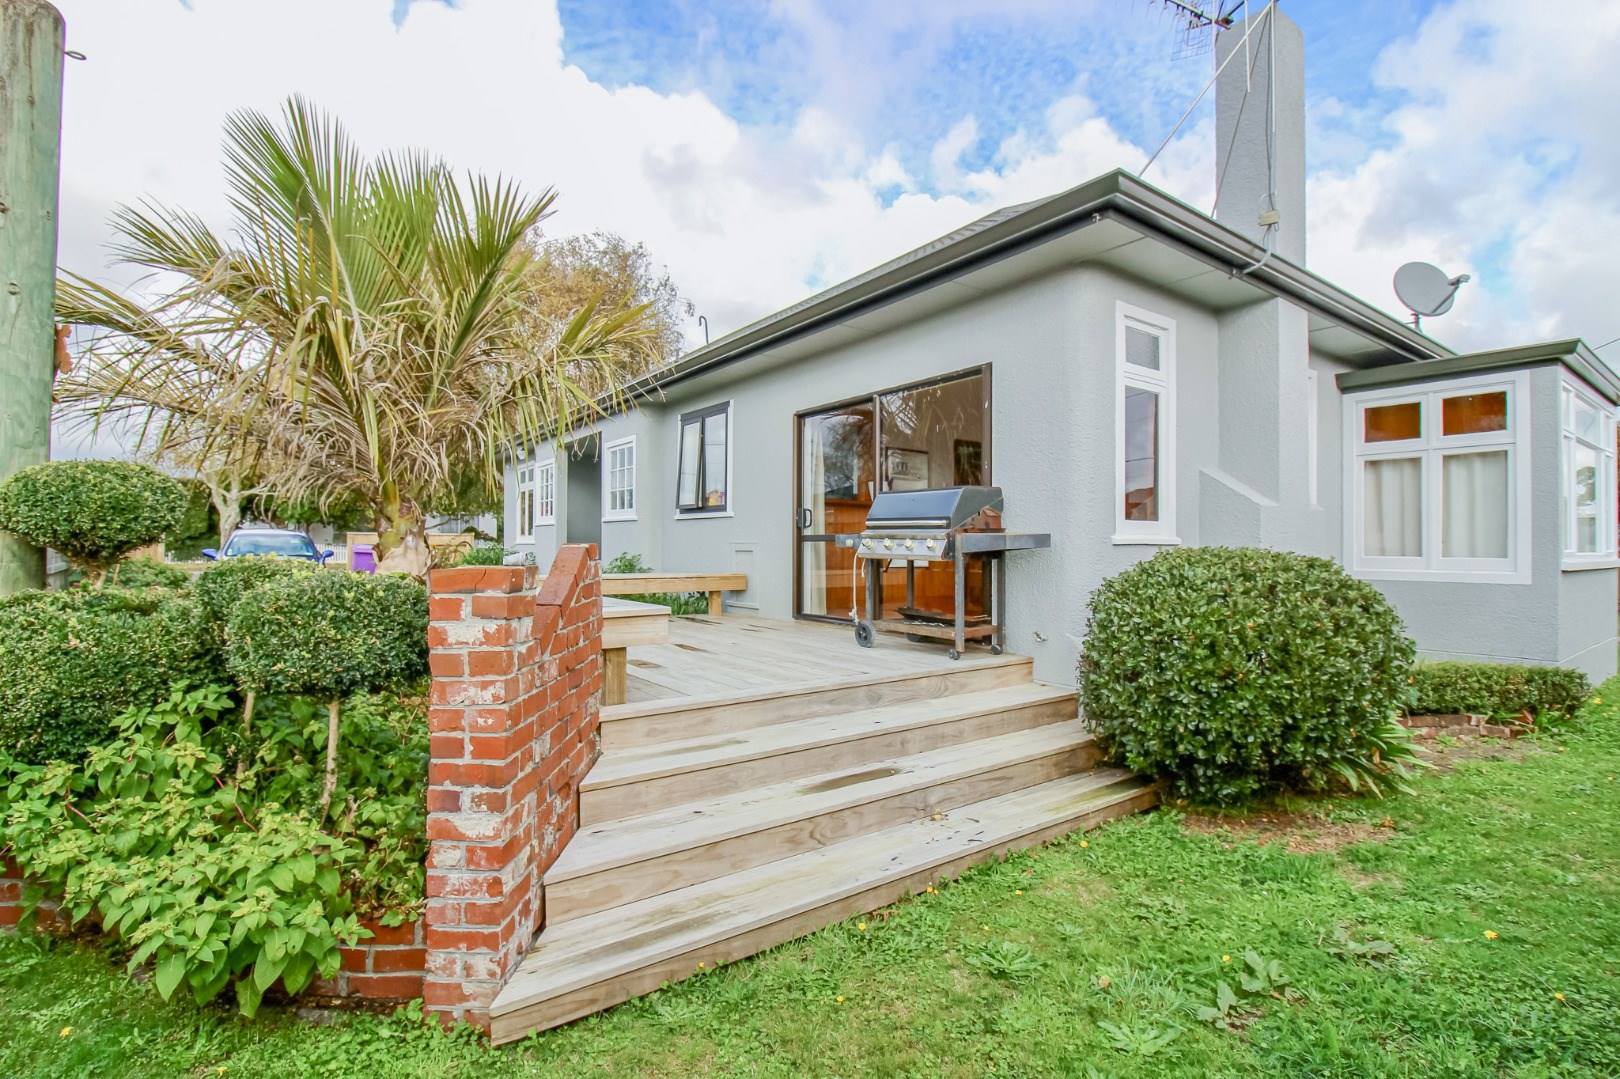 Real Estate For Rent Houses & Apartments : Family Home!, Wellington, Manawatu / Wanganui